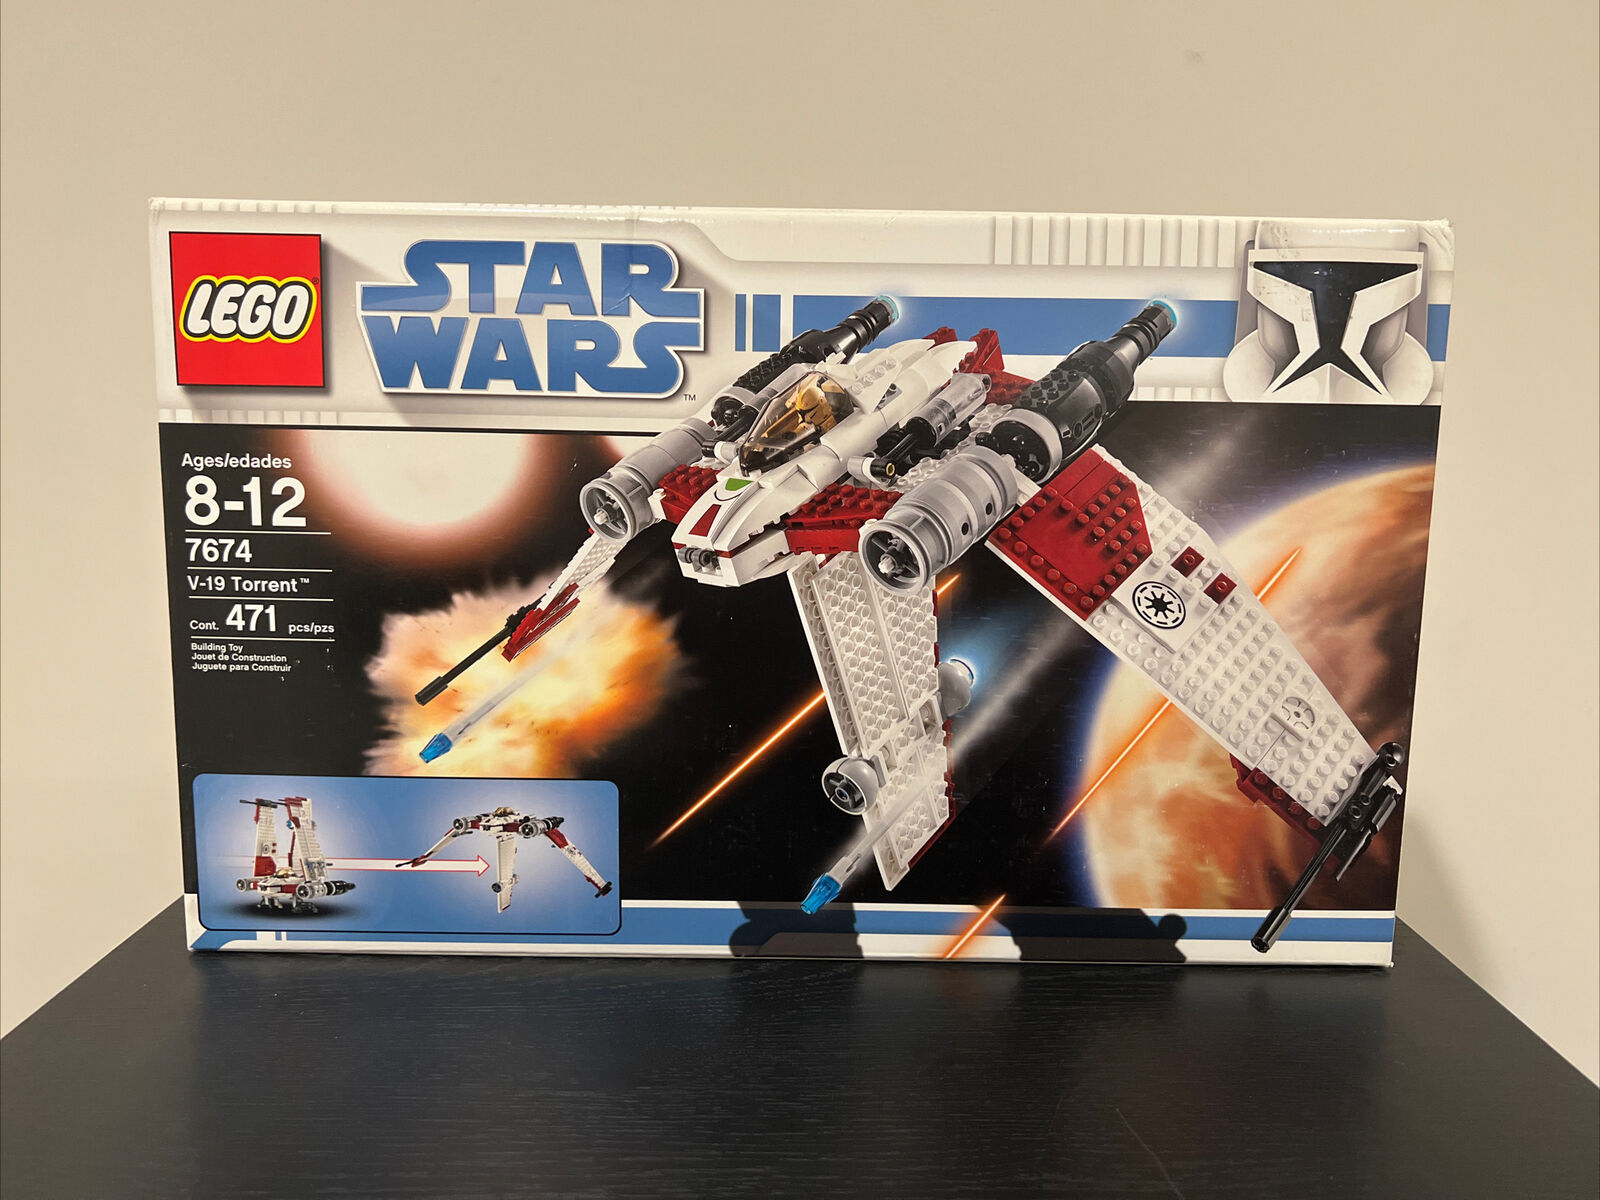 LEGO Star Wars: V-19 Torrent (7674) - New Sealed Rare Retired